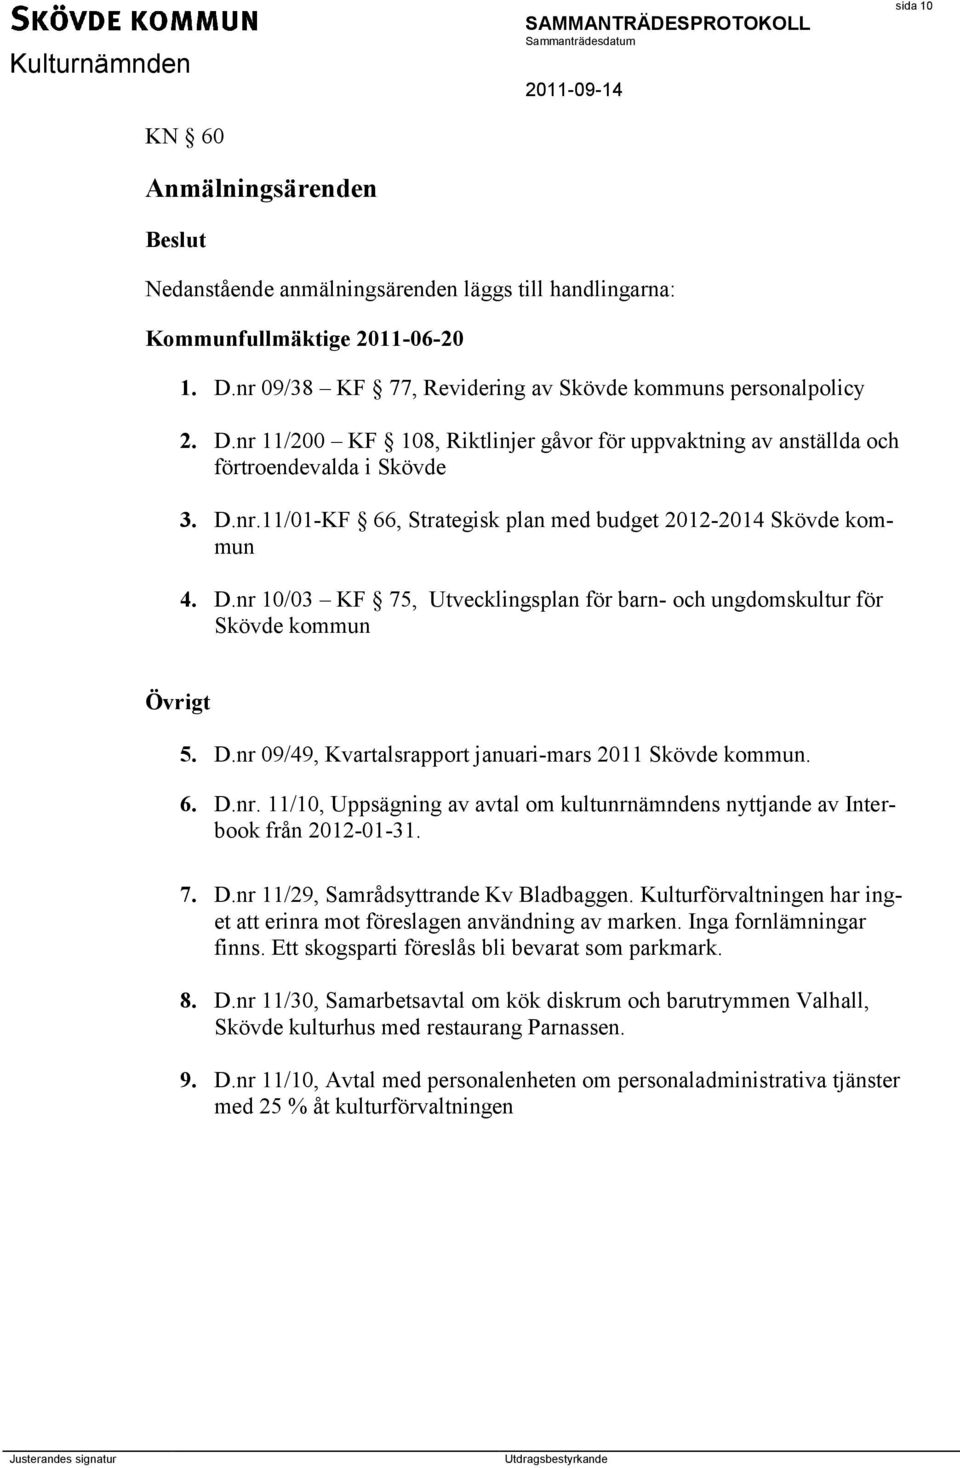 D.nr 10/03 KF 75, Utvecklingsplan för barn- och ungdomskultur för Skövde kommun Övrigt 5. D.nr 09/49, Kvartalsrapport januari-mars 2011 Skövde kommun. 6. D.nr. 11/10, Uppsägning av avtal om kultunrnämndens nyttjande av Interbook från 2012-01-31.